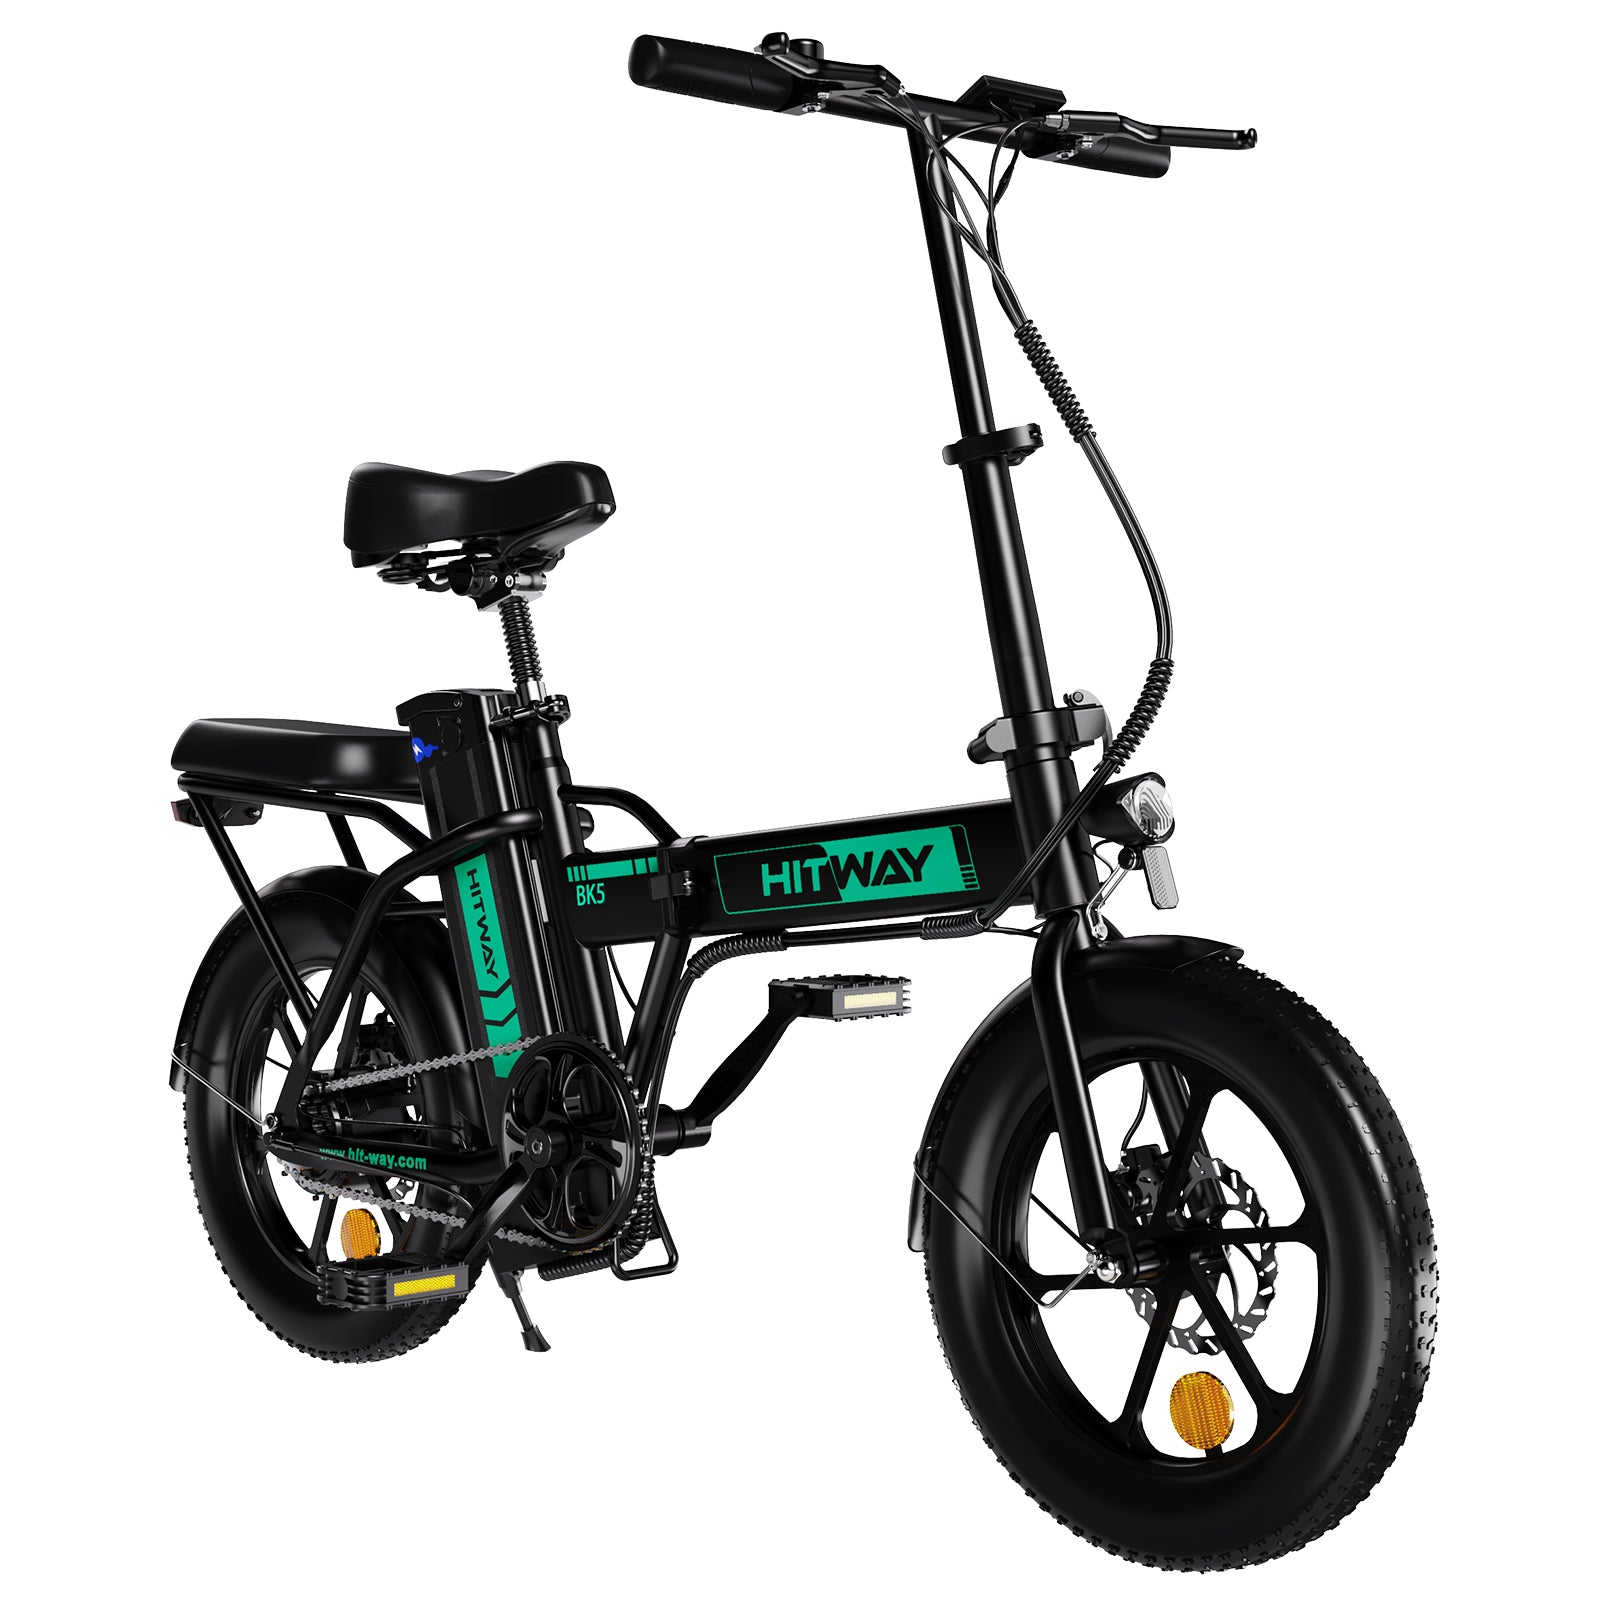 Vélo électrique pliant BK5 3.0